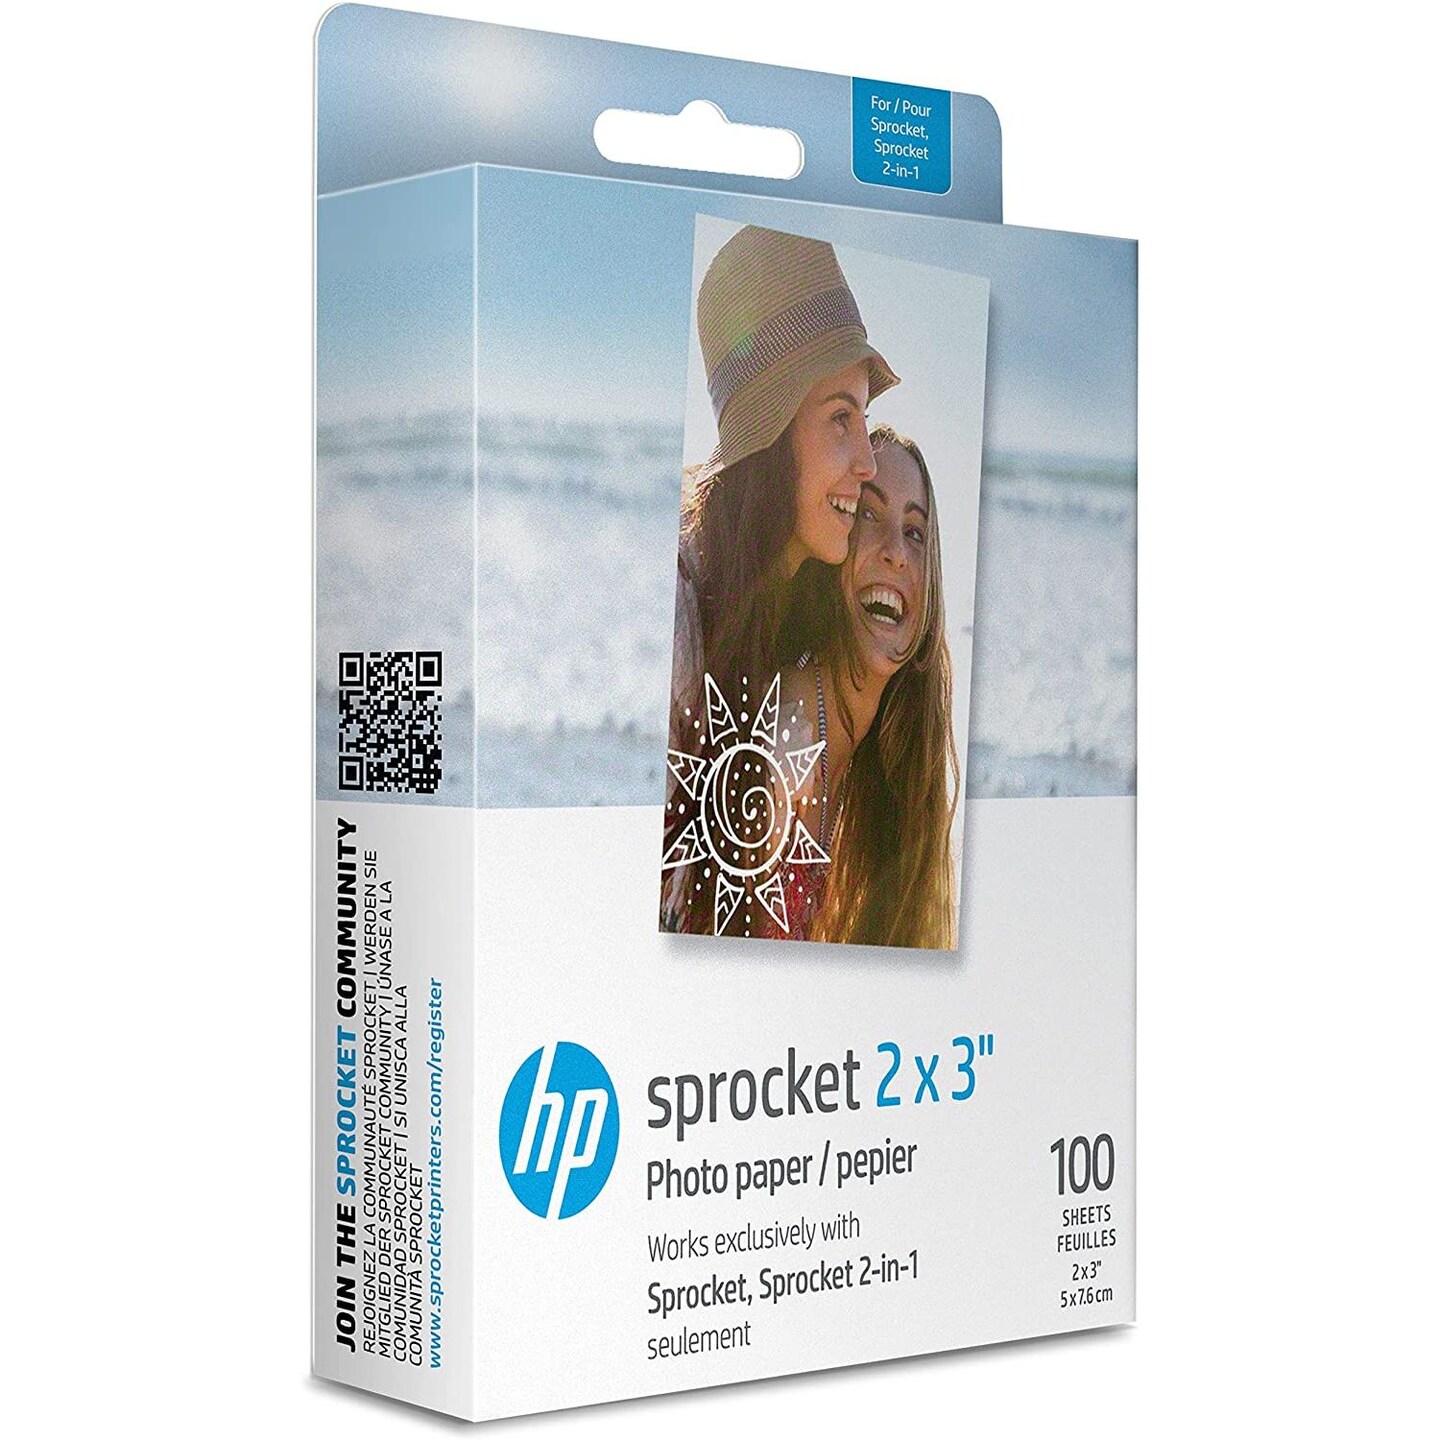 HP Sprocket Sticky Back Zink Photo Paper 2x3, Photo Paper Compatible with HP  Sprocket Photo Printers